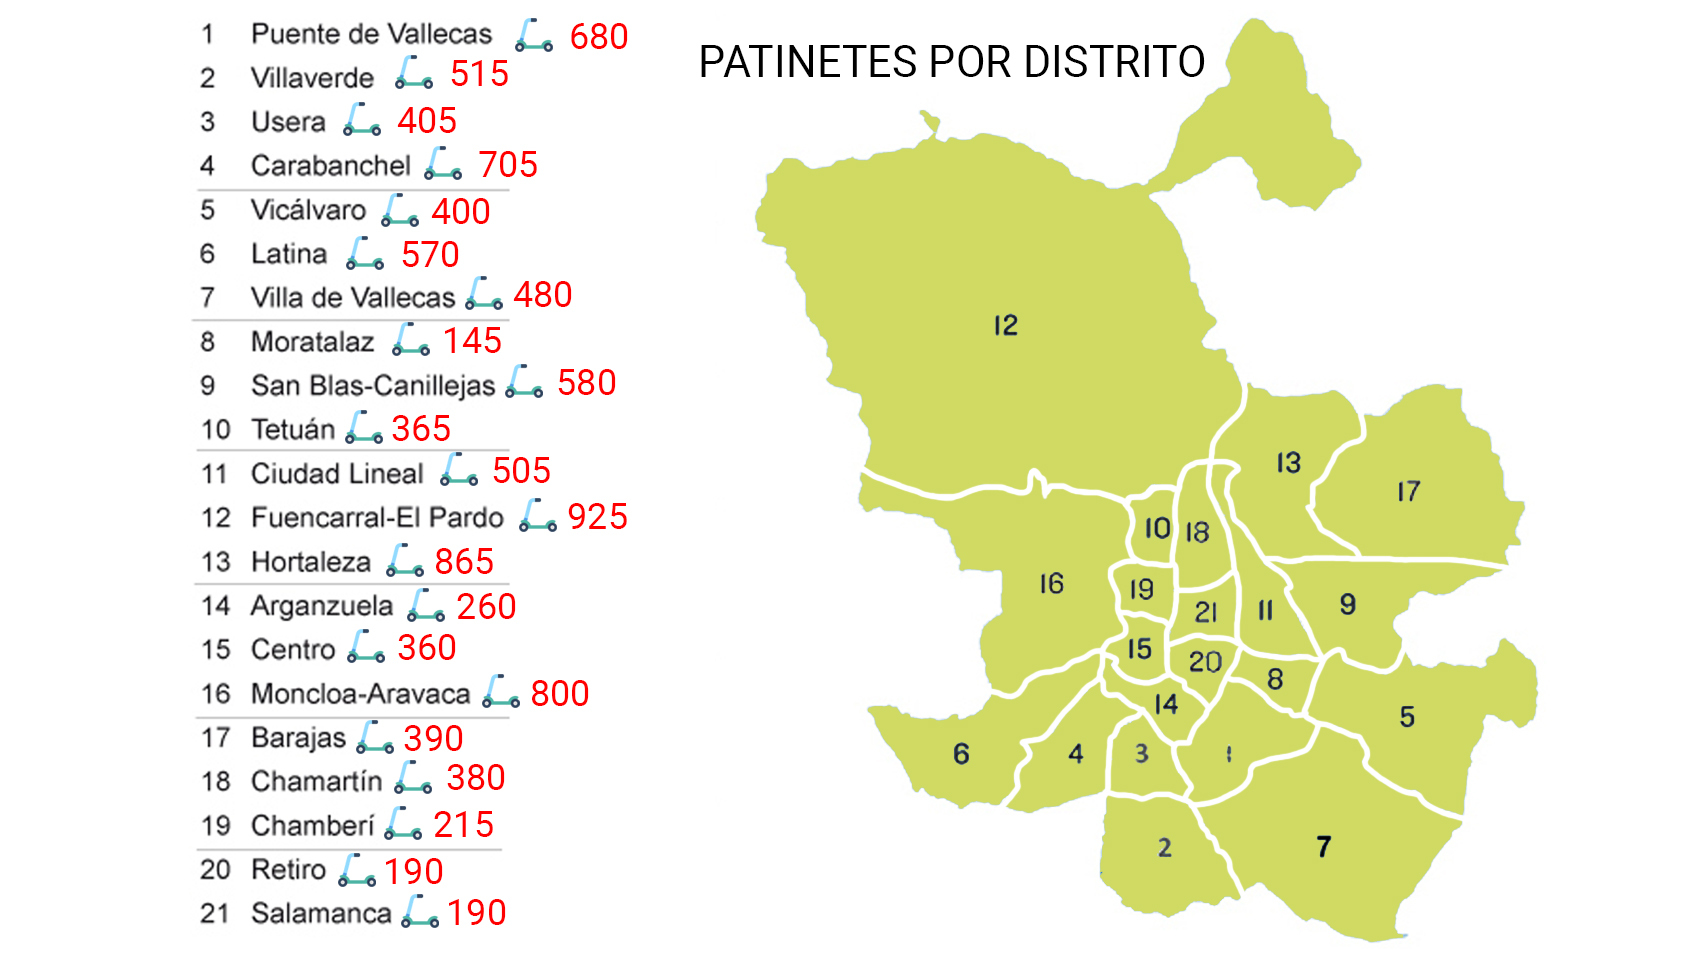 Patinetes distribuidos por distritos.